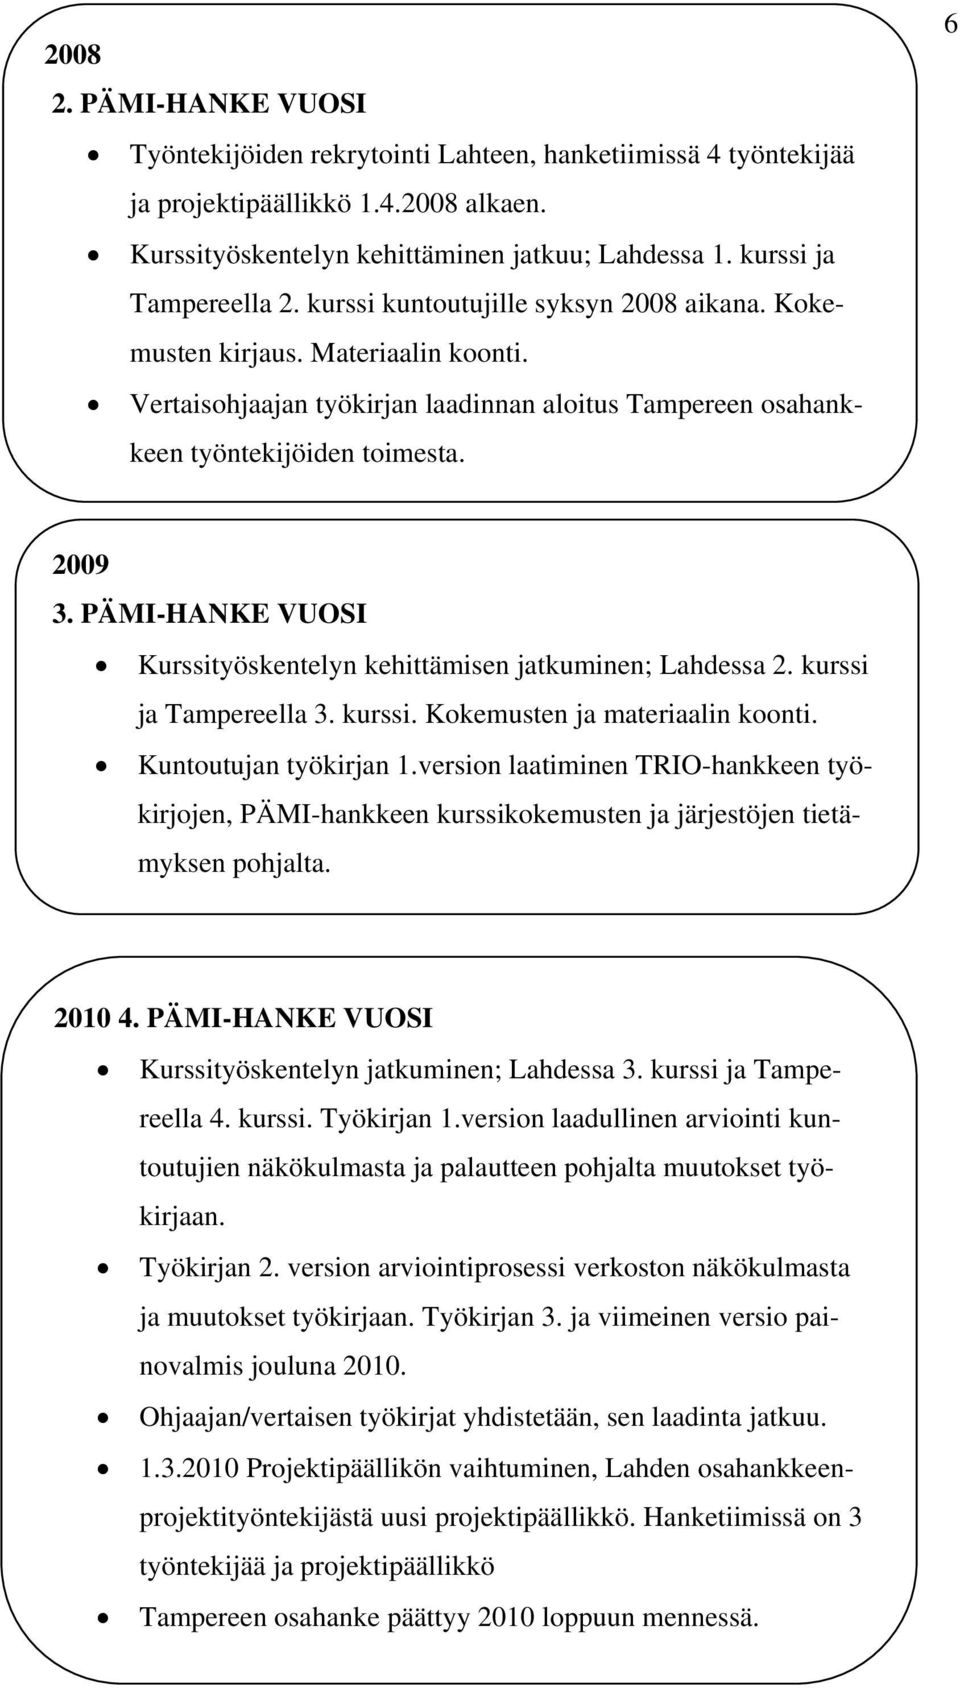 6 2009 3. PÄMI-HANKE VUOSI Kurssityöskentelyn kehittämisen jatkuminen; Lahdessa 2. kurssi ja Tampereella 3. kurssi. Kokemusten ja materiaalin koonti. Kuntoutujan työkirjan 1.